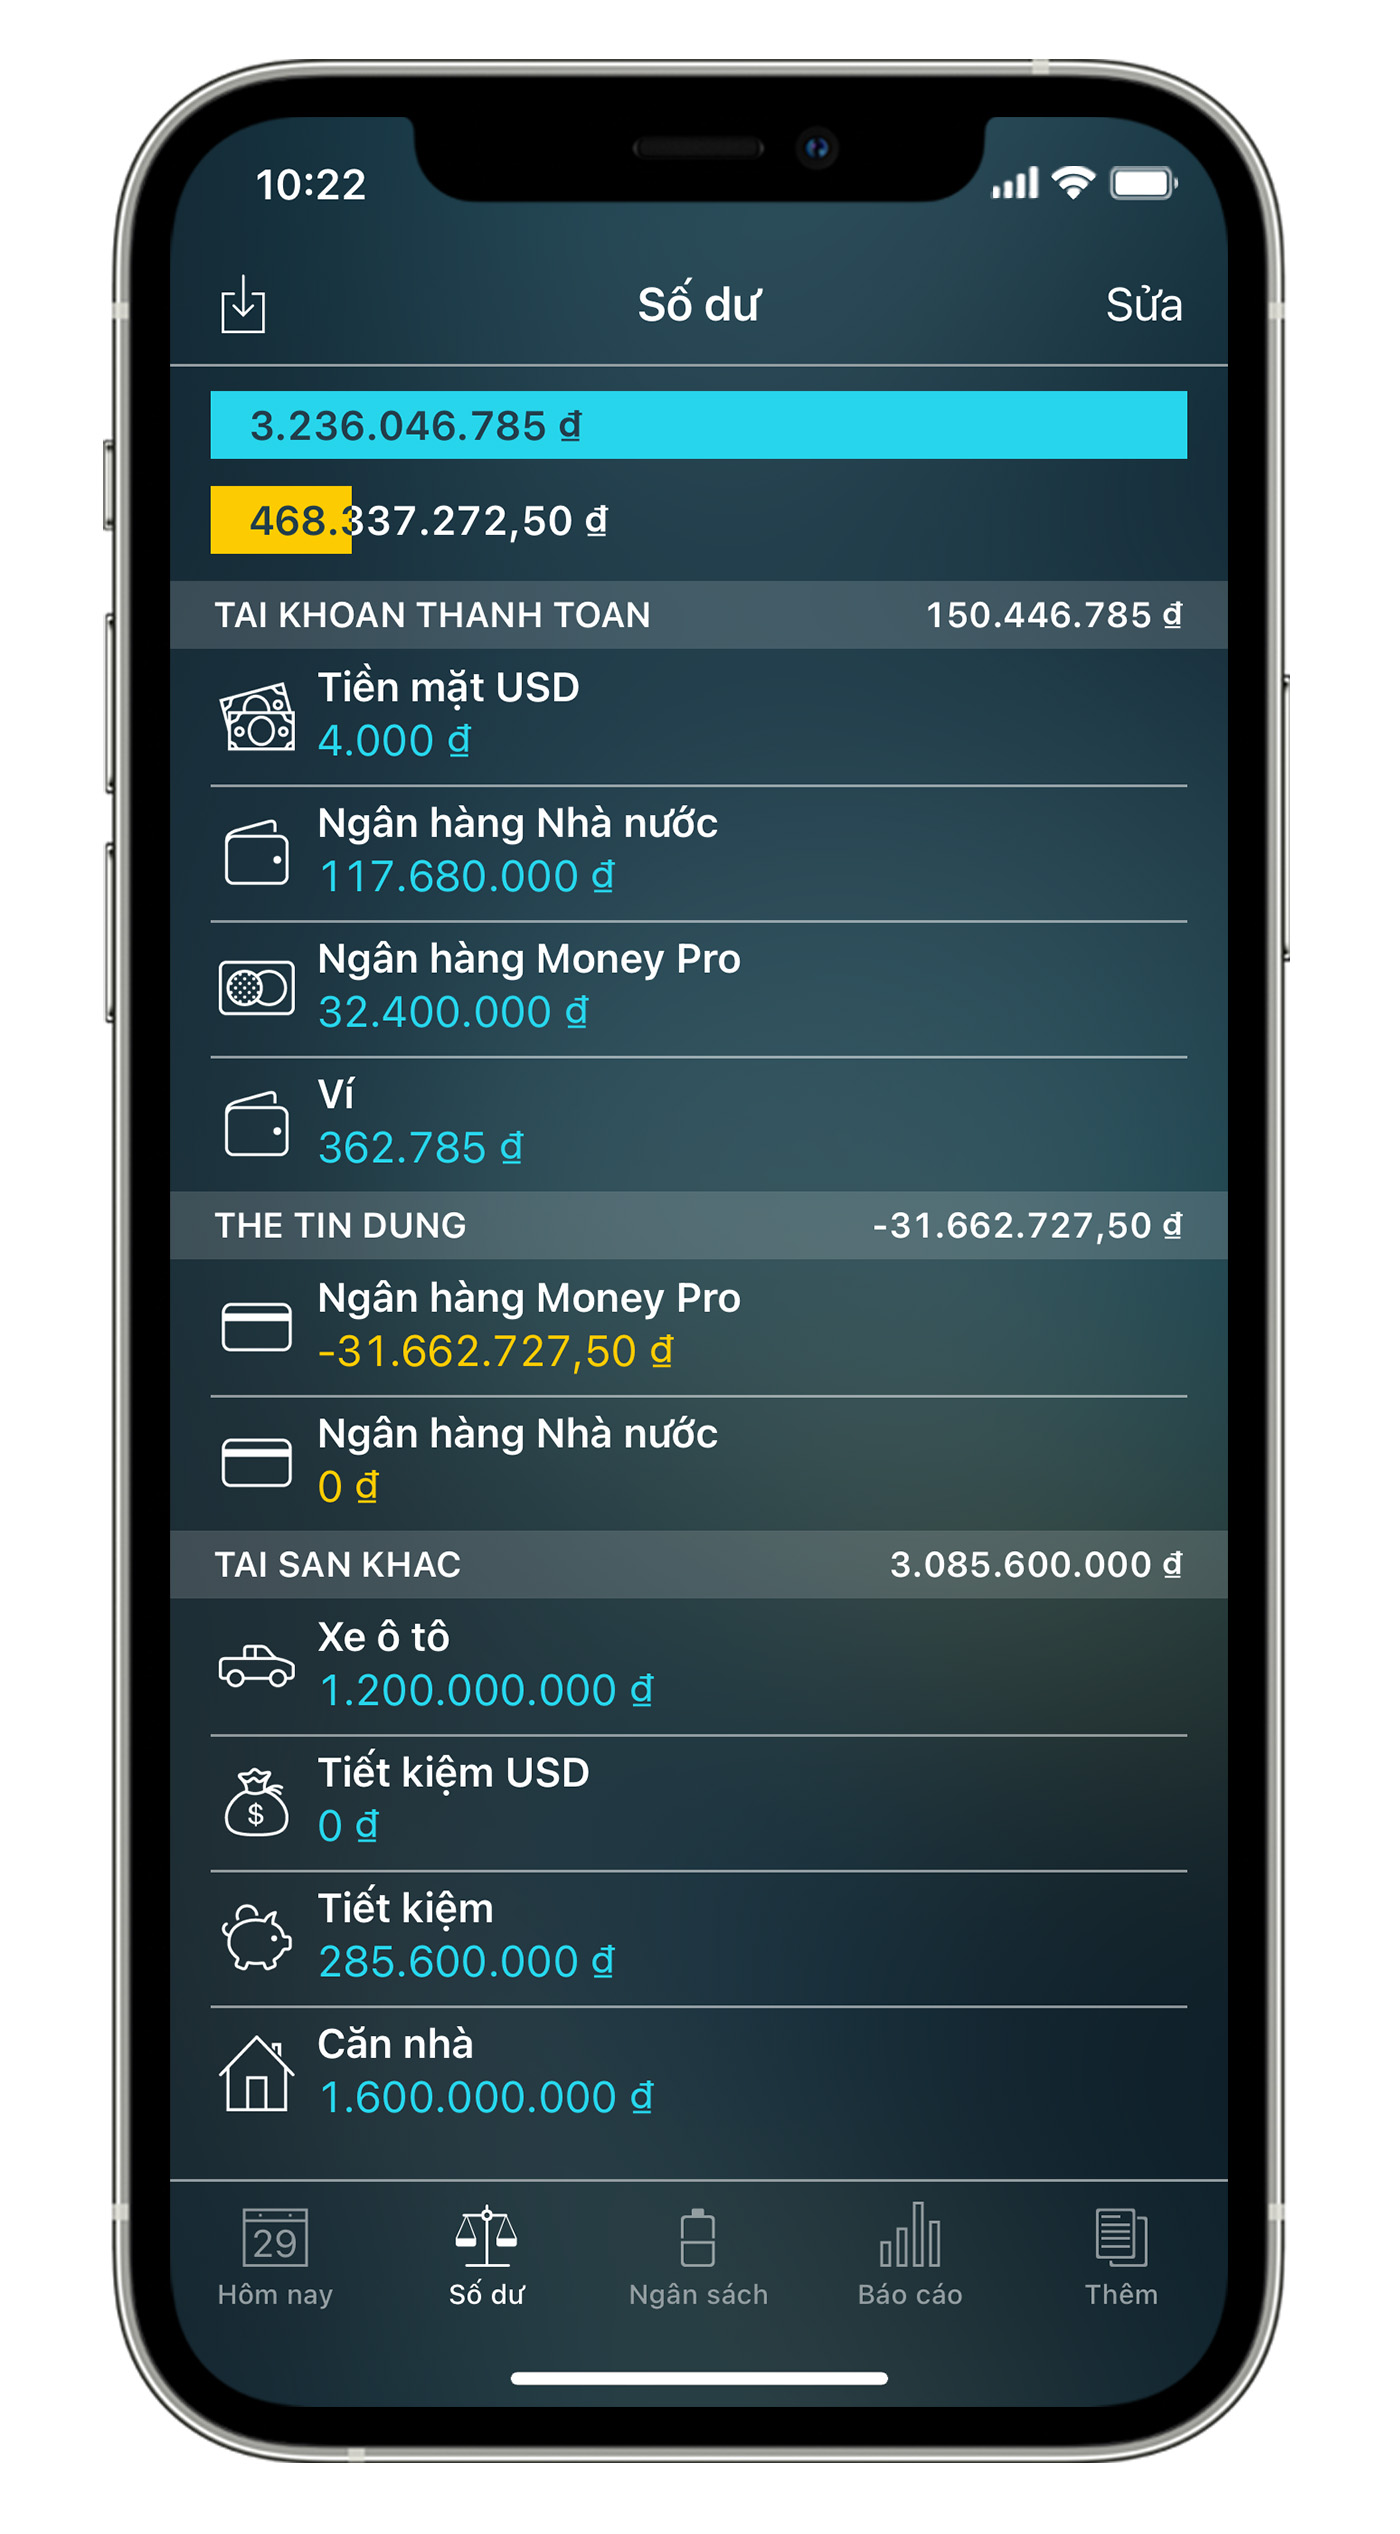 Money Pro for iPhone and iPad - Trình quản lý Tài khoản